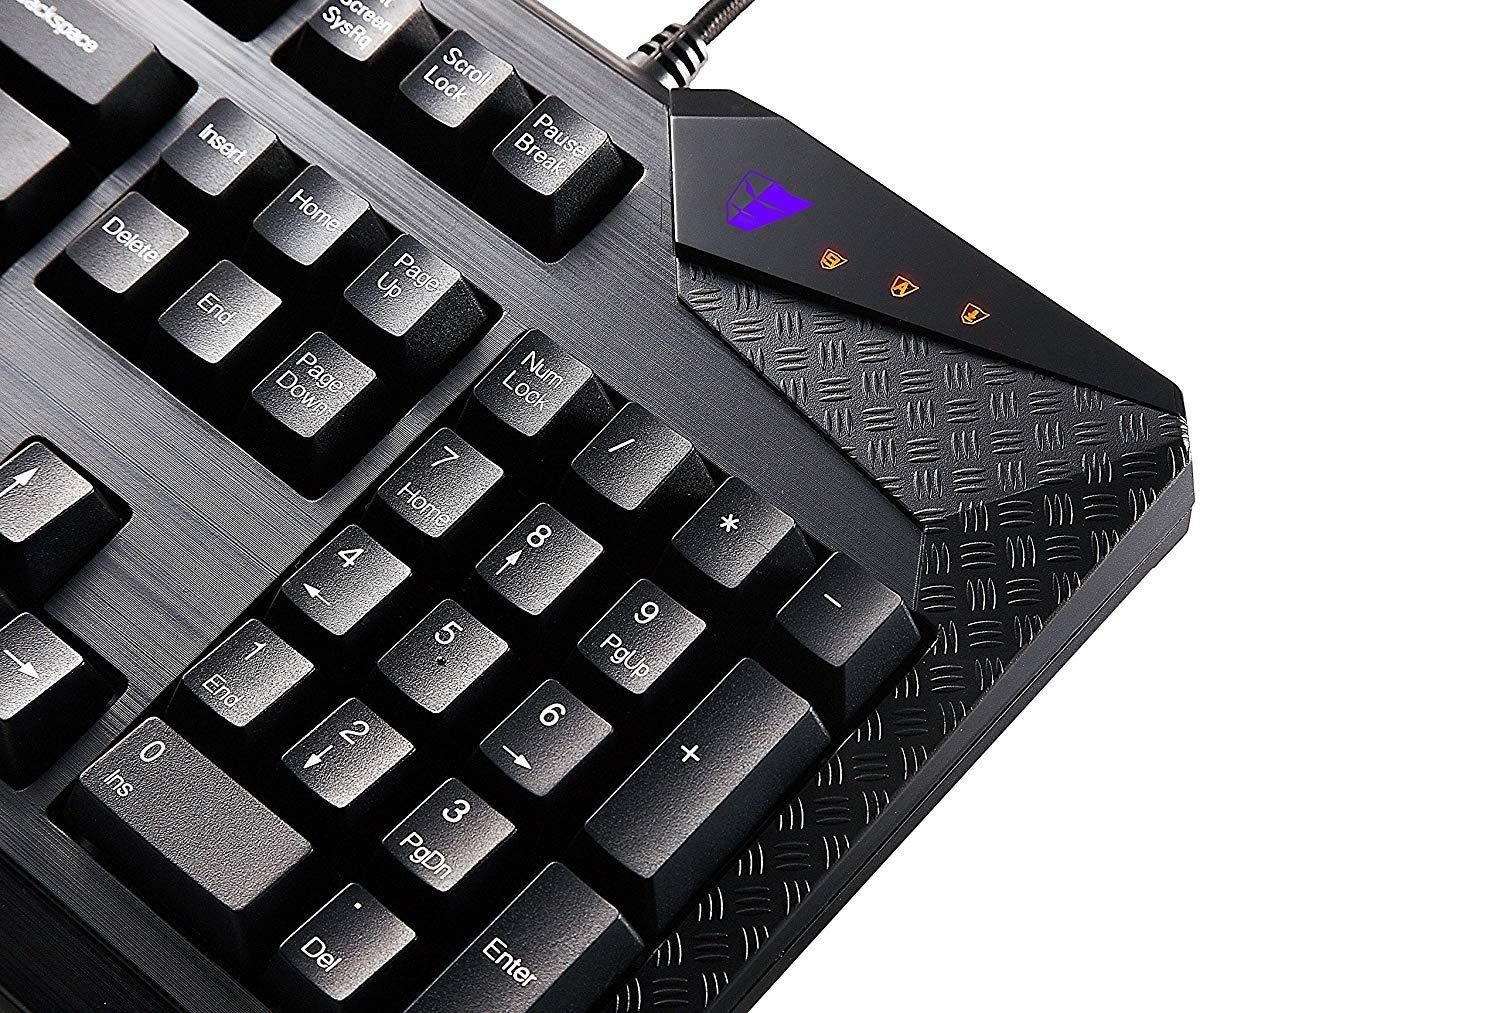 Klawiatura Tesoro Durandal Mechanical Gaming Keyboard, MX Switches